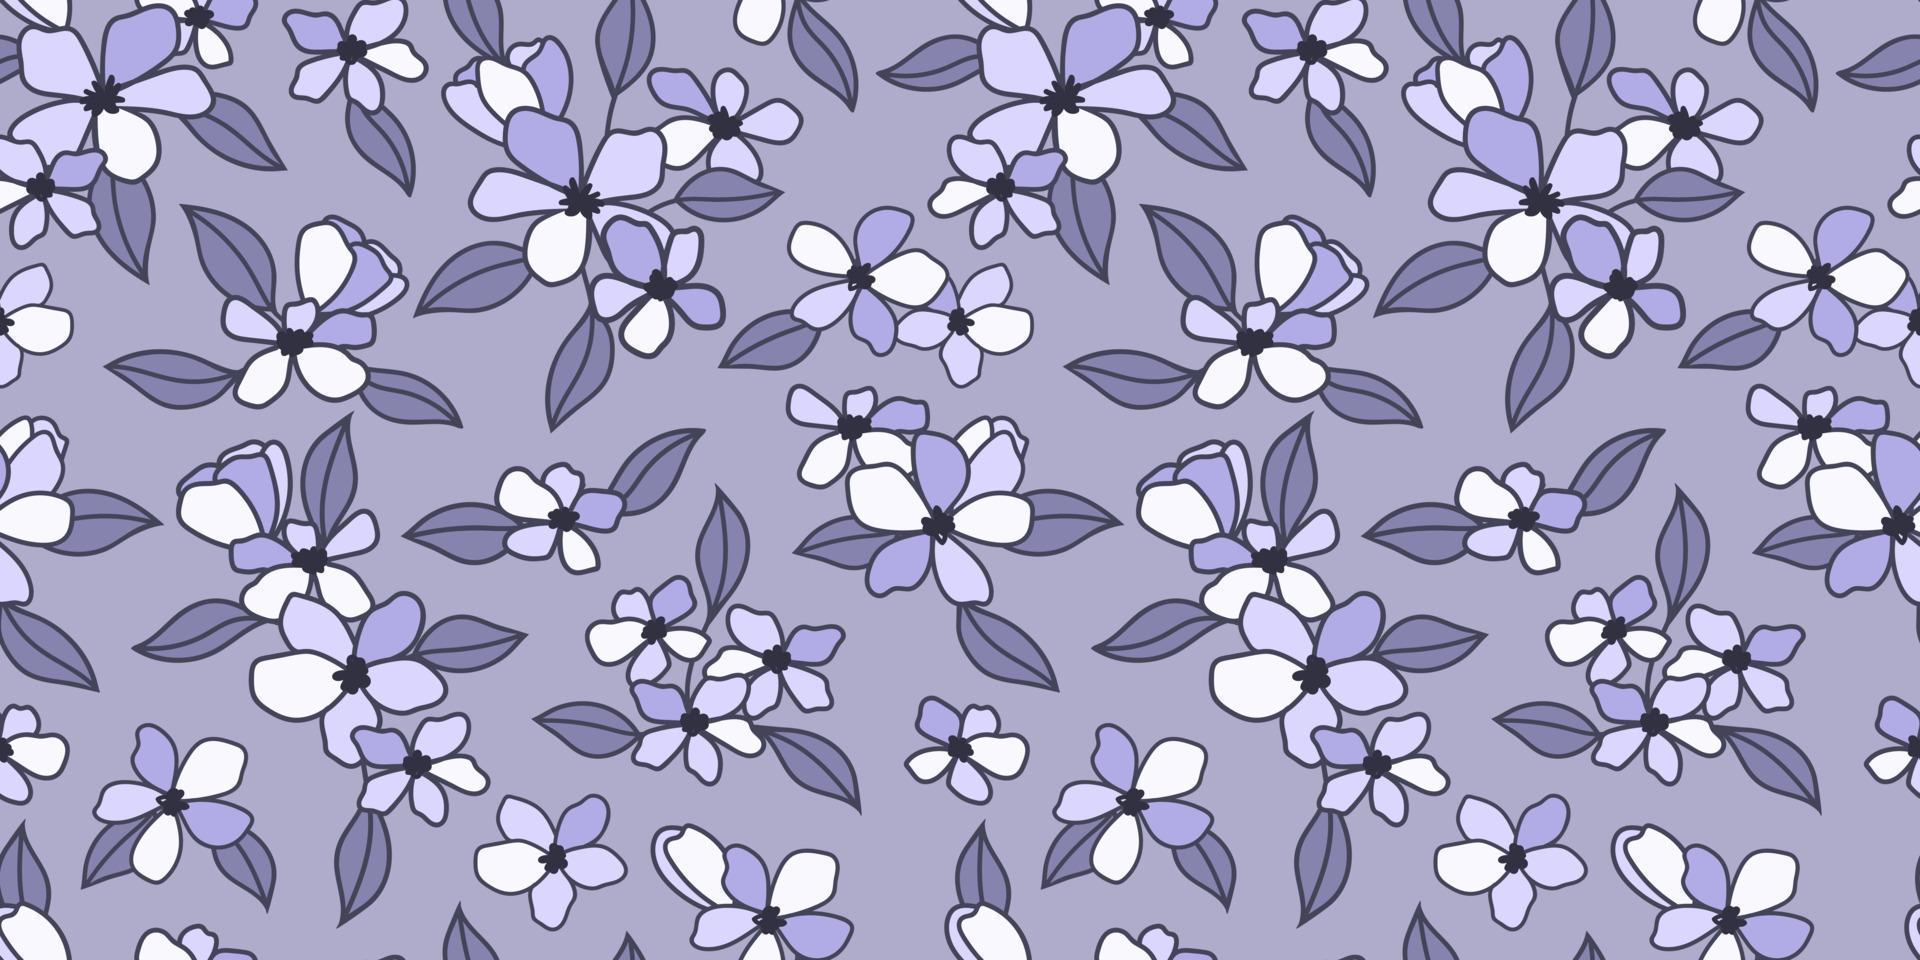 patrón floral azul, fondo de repetición de vector dibujado a mano, flores ilustradas papel tapiz de primavera perfecto.